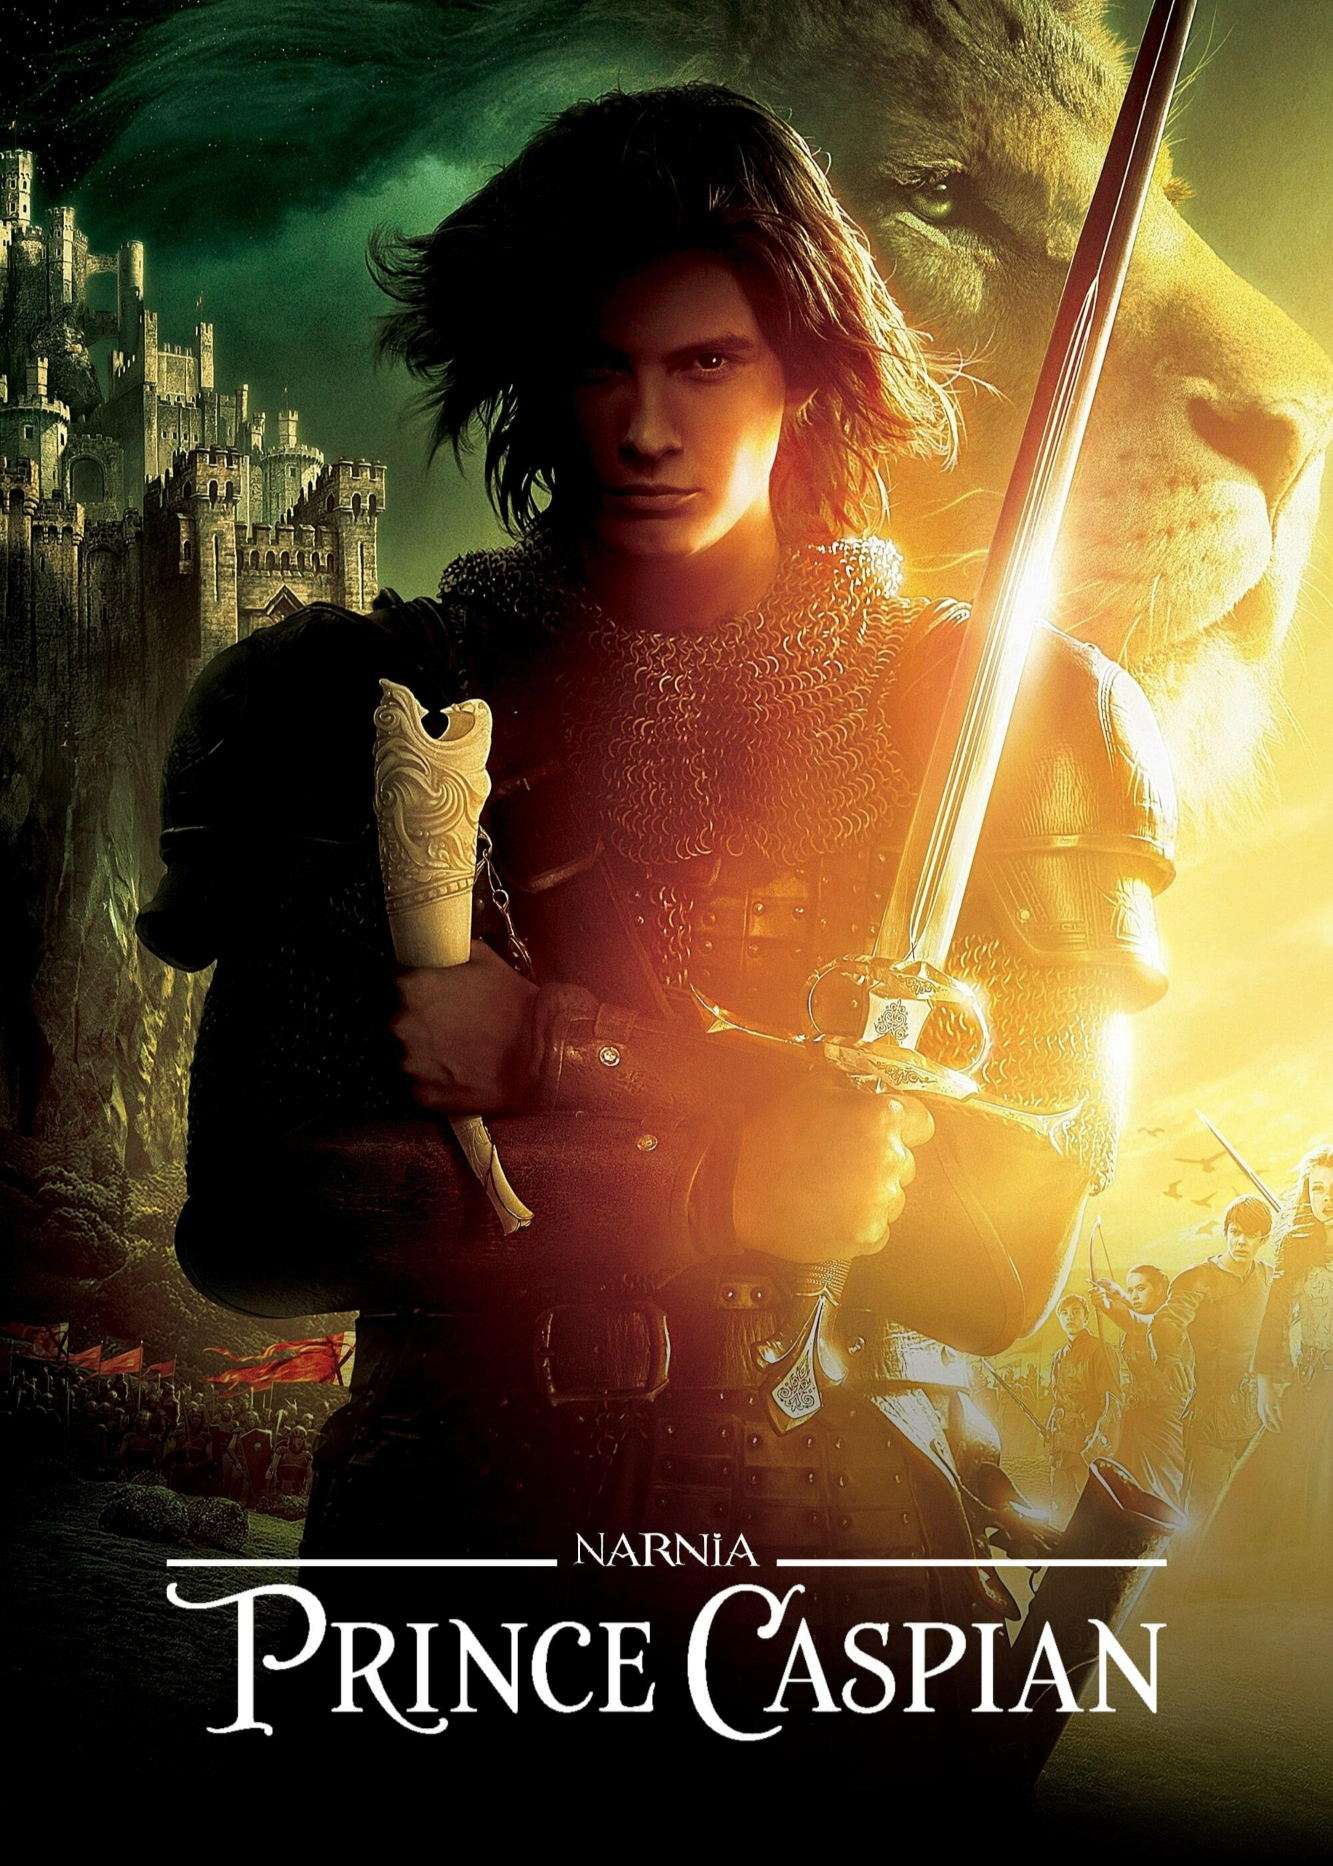 Poster Phim Biên Niên Sử Narnia: Hoàng Tử Caspian (The Chronicles of Narnia: Prince Caspian)